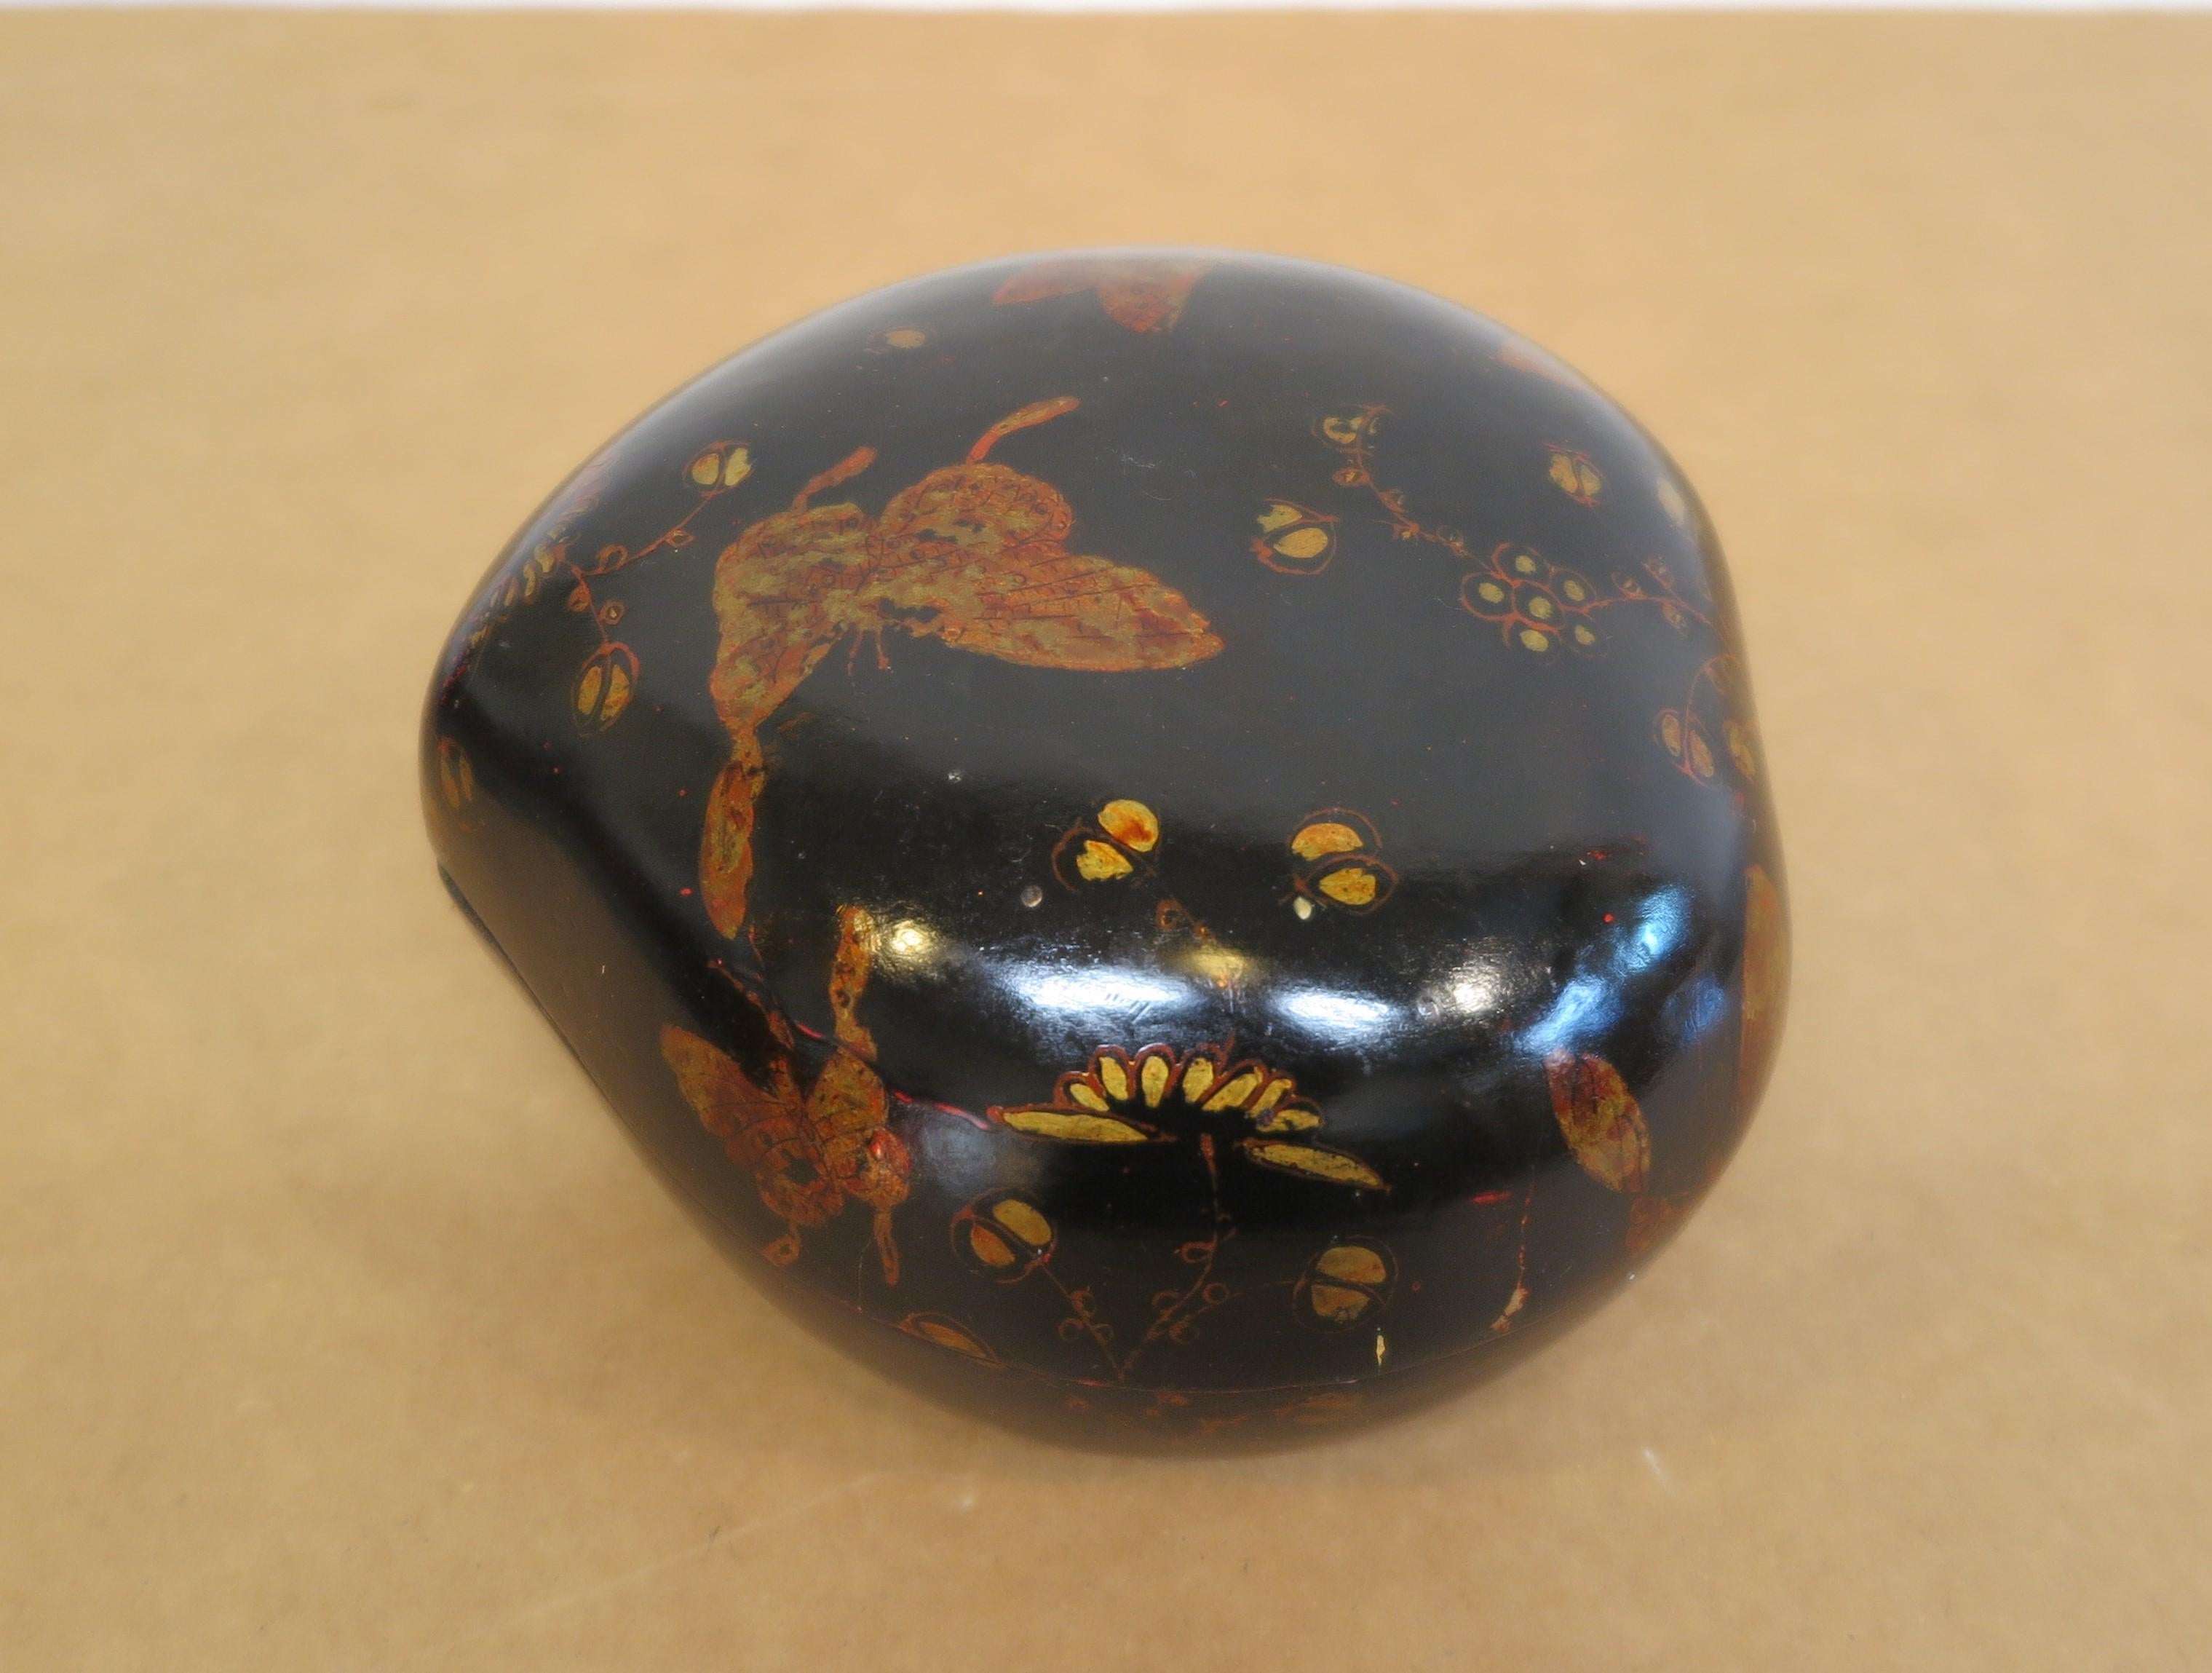 Herzförmige Chinoiserie-Lackschachtel aus Pappmaché.  Schön bemalte, dekorierte Dose mit vergoldeter Malerei auf schwarzem Lack.  Dies ist eine wunderbare dekorative Sammelbox, die für viele kleine Gegenstände verwendet werden kann.  Diese Schachtel